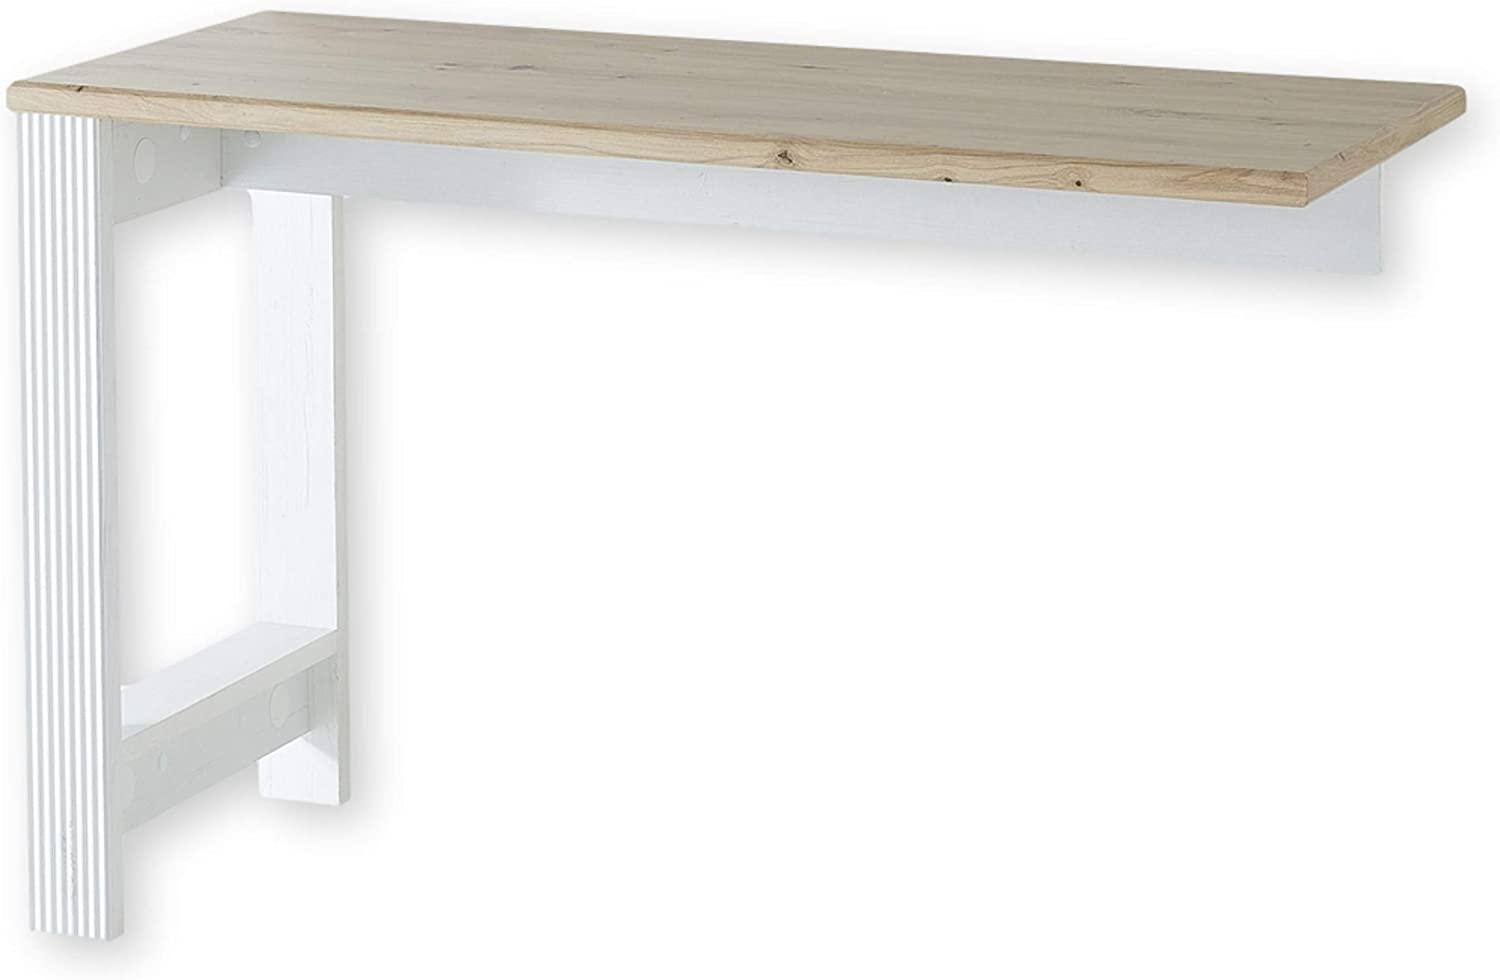 JASMIN Schreibtisch Winkel in Pinie hell, Artisan Eiche Optik - Eckschreibtisch Erweiterung für mehr Arbeitsfläche - Landhausstil Büromöbel Komplettset - 120 x 76 x 50 cm (B/H/T) Bild 1